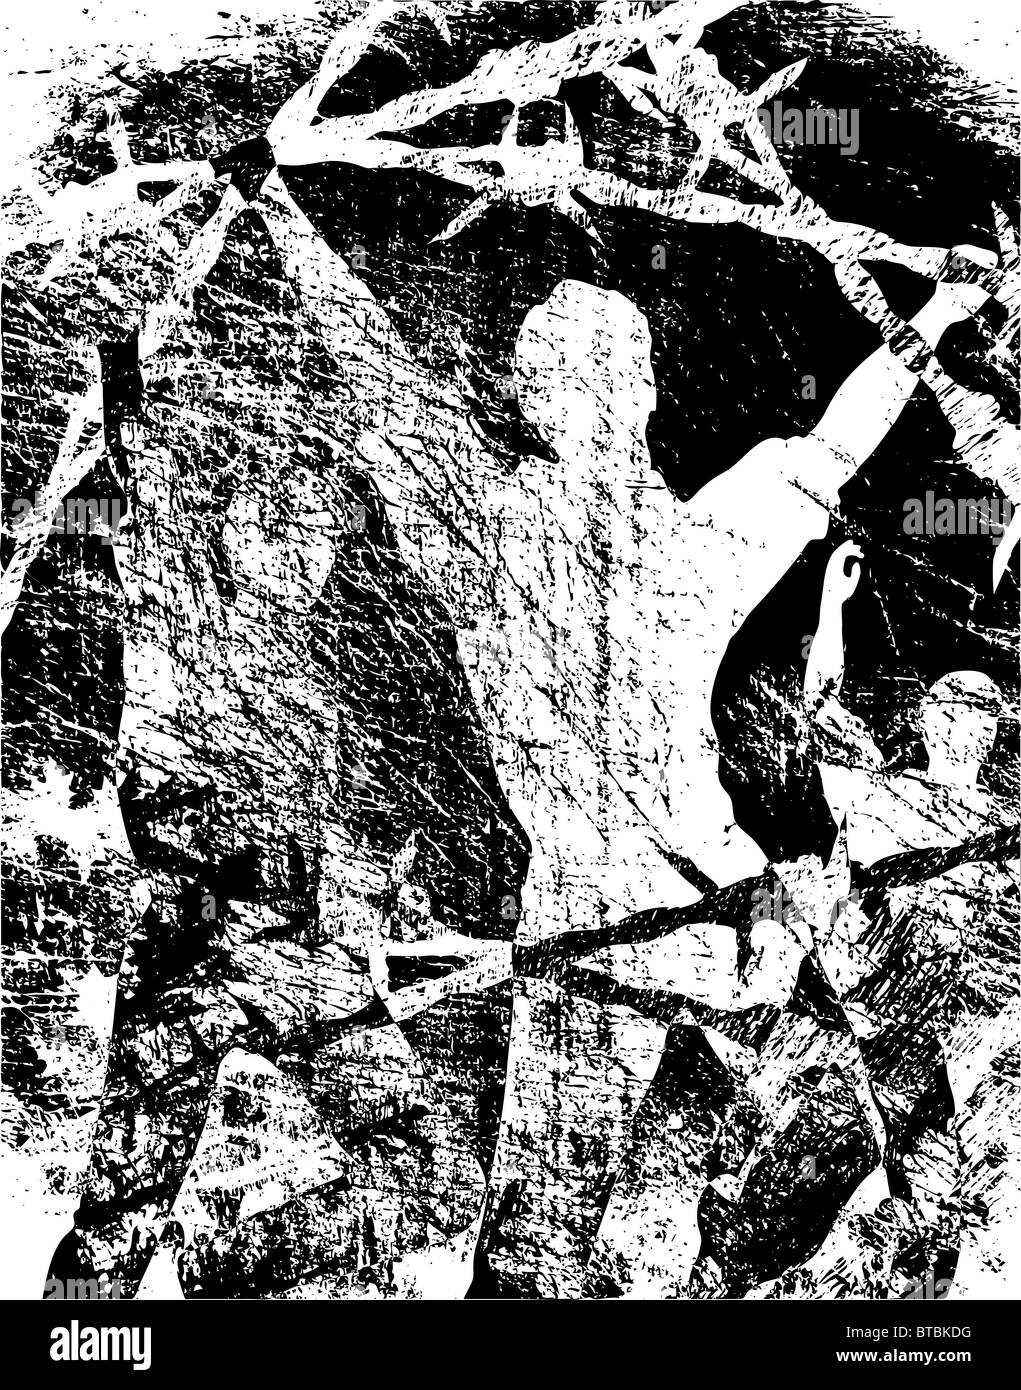 Grunge sfondo illustrato di uomini e filo spinato Foto Stock